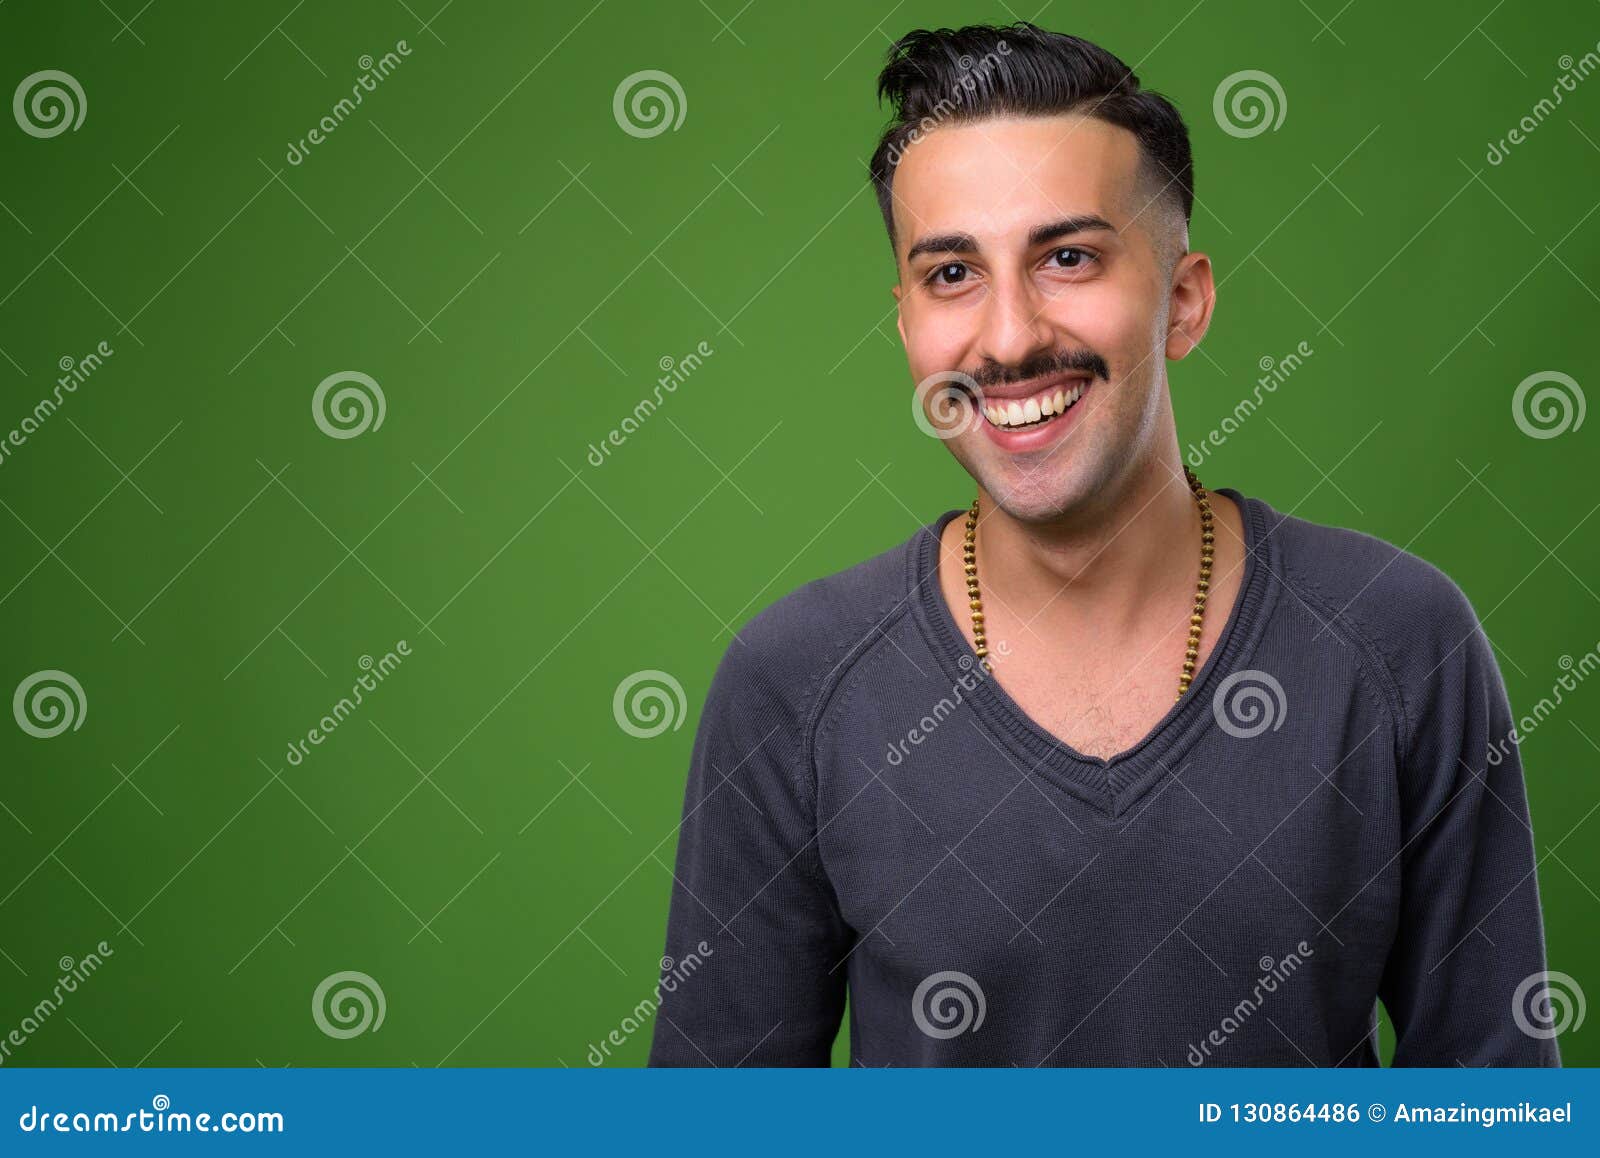 hombre-iran%C3%AD-hermoso-joven-con-el-bigote-contra-backgroun-verde-130864486.jpg